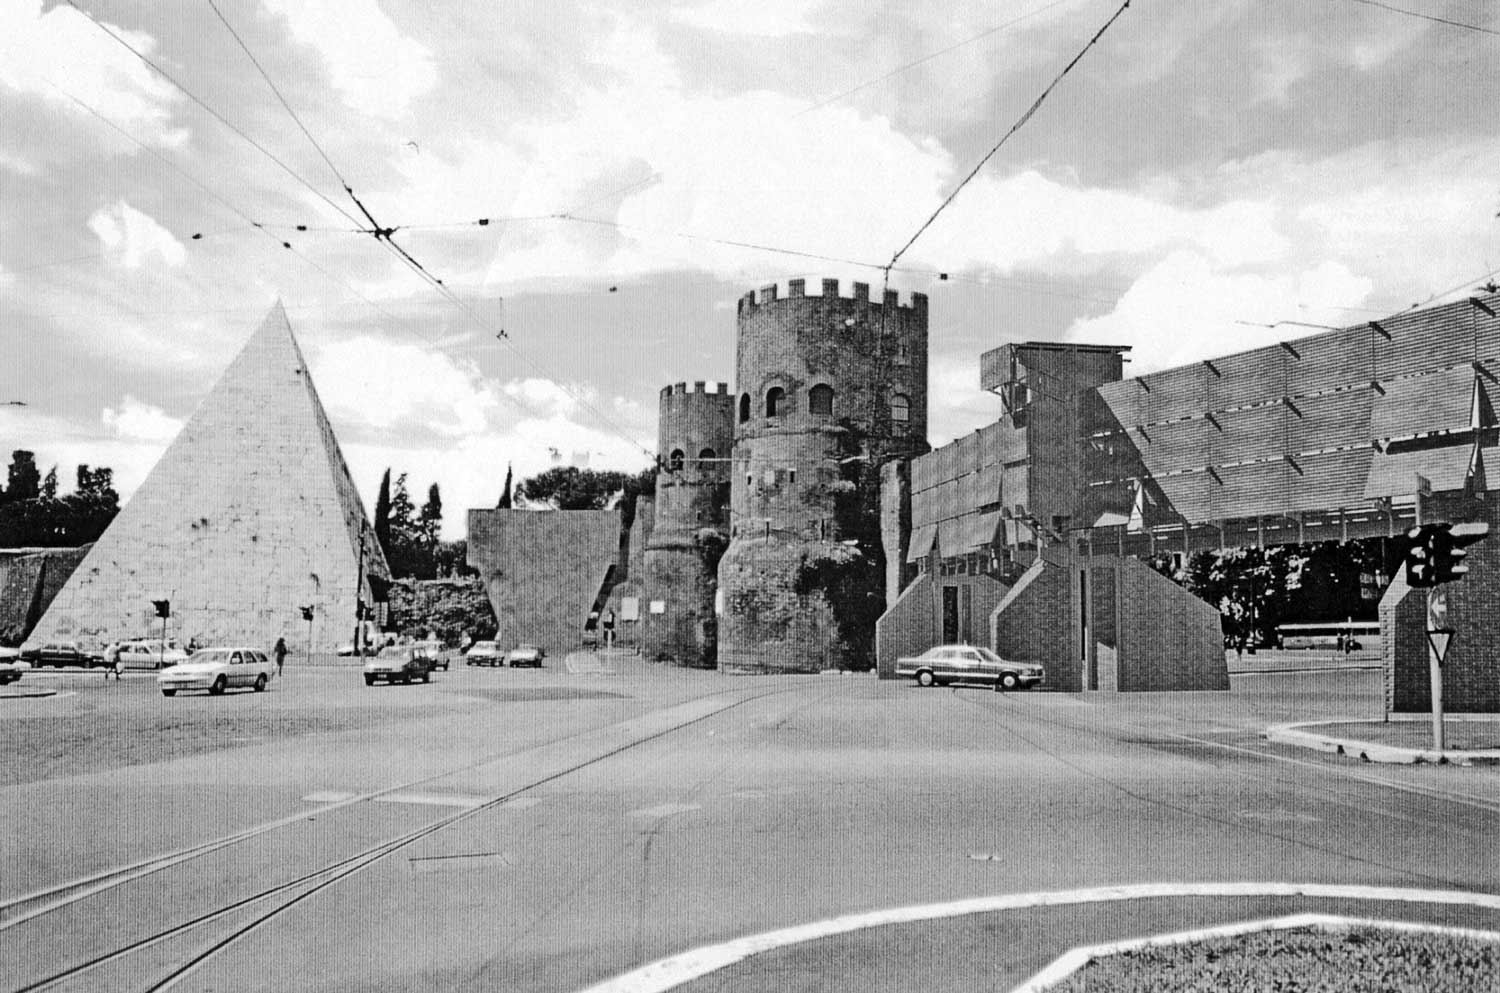 12 - Ricerca di ripristino della continuità delle Mura Aureliane - Collegamento a Porta San Paolo - Fotoinserimento nel contesto (elaborazione di F. Cibinel)